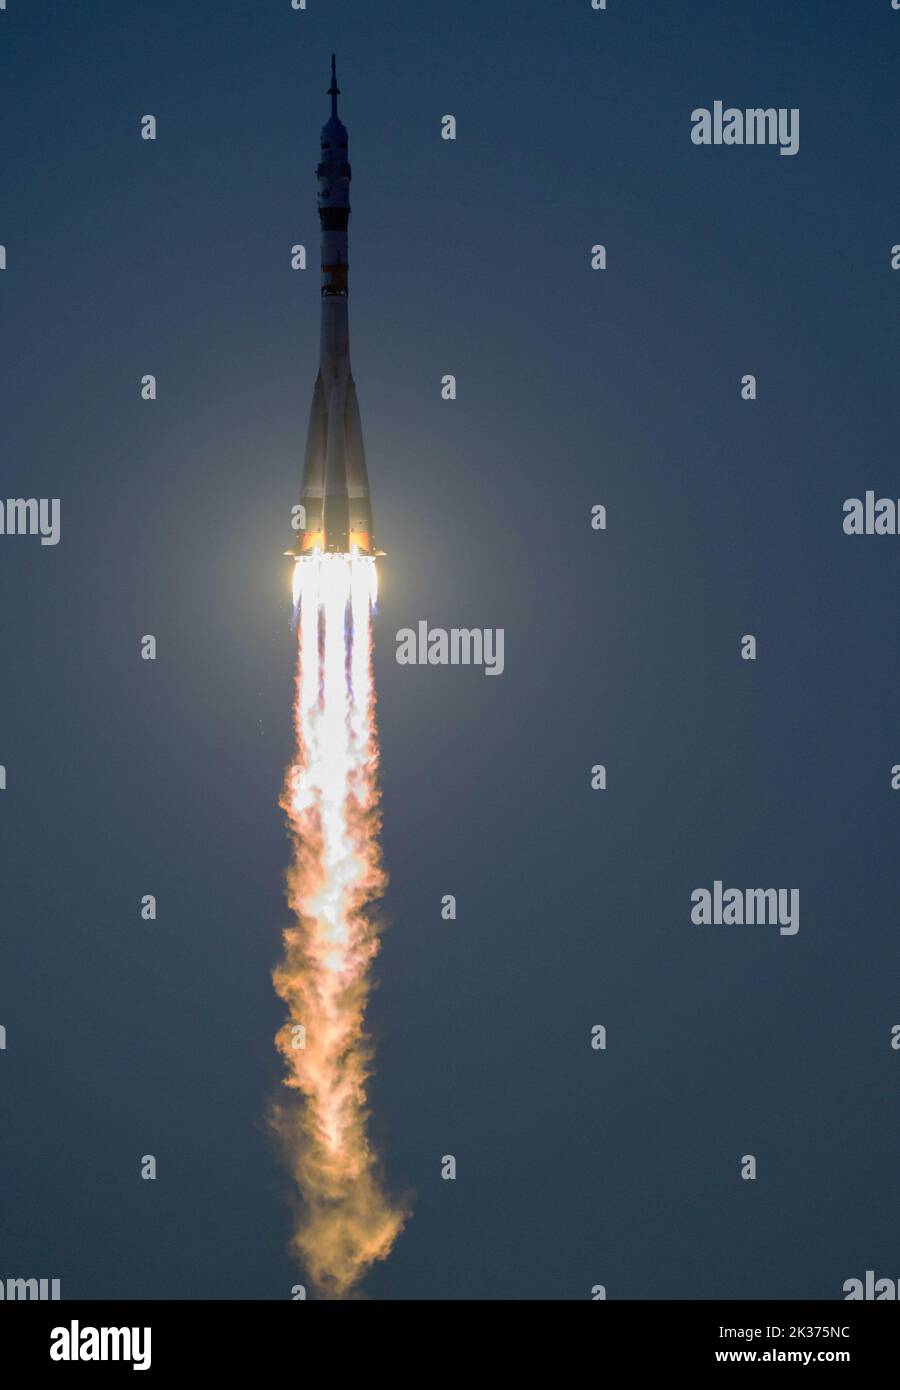 BAIKONUR, KAZAKISTAN - 21 settembre 2022 - il razzo Soyuz MS-22 lancia alla Stazione spaziale Internazionale con l'astronauta della spedizione 68 Frank Rubio Foto Stock